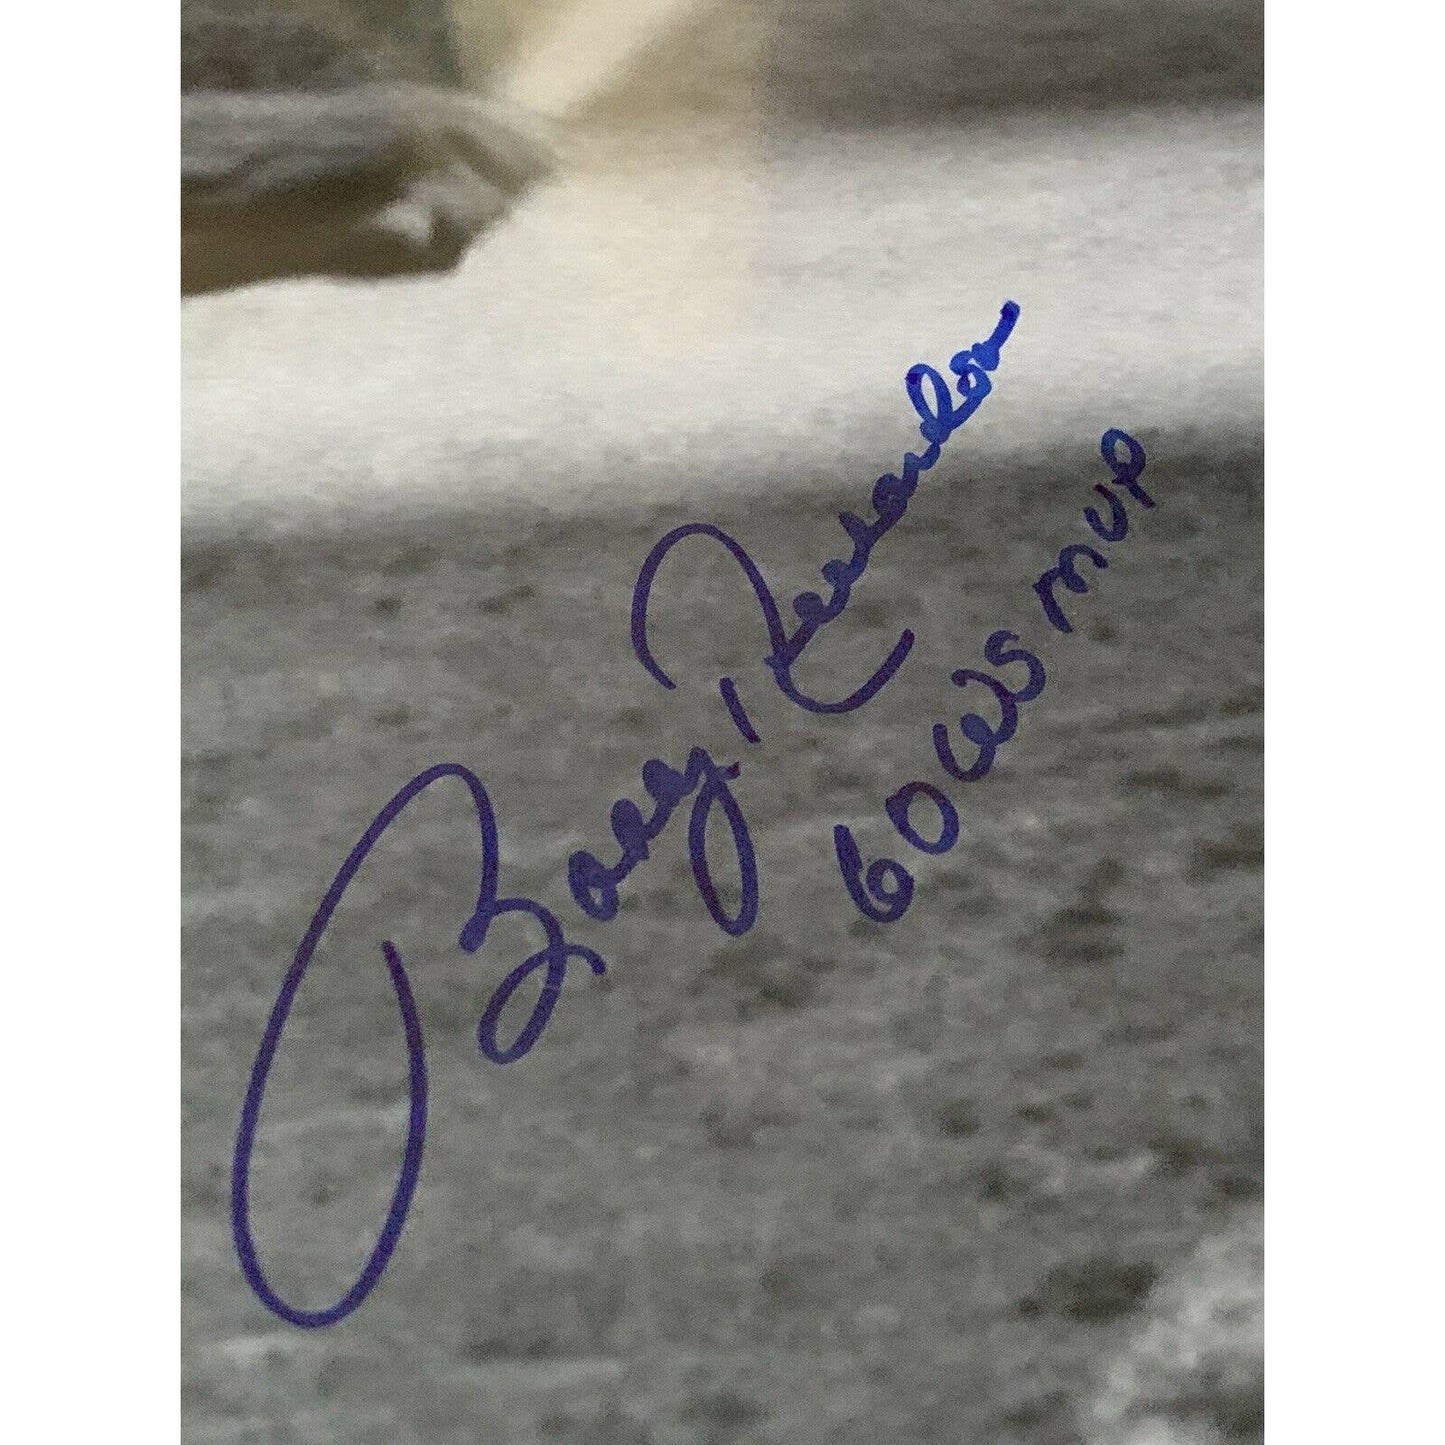 Bobby Richardson Autographed/Signed 16x20 Photo New York Yankees - TreasuresEvolved